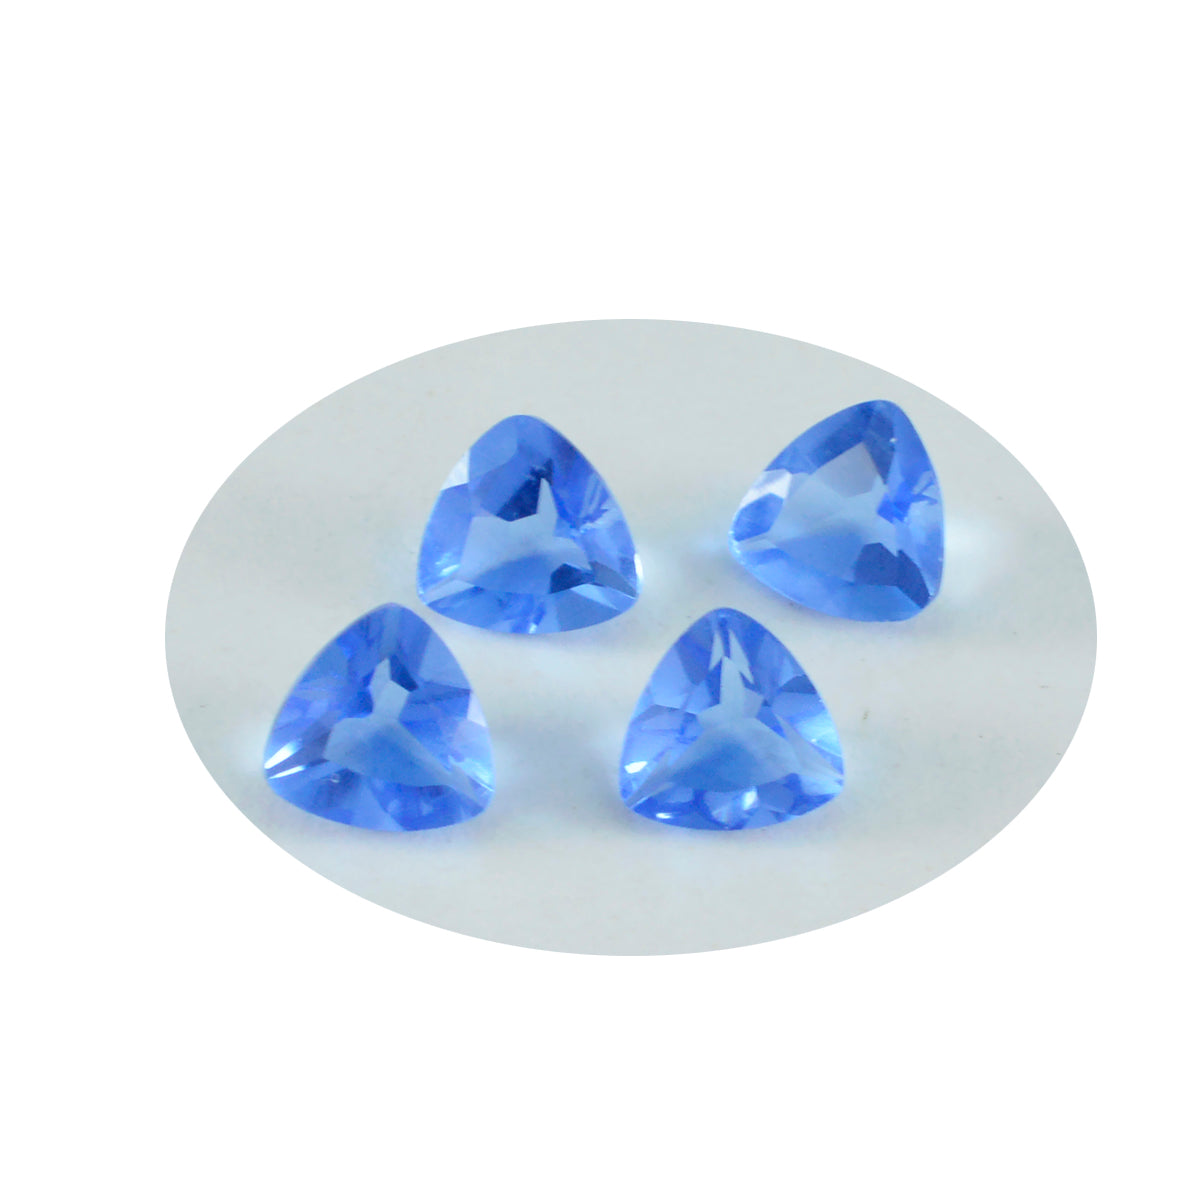 Riyogems 1 Stück blauer Saphir, CZ, facettiert, 9 x 9 mm, Trillionenform, süßer Qualitäts-Edelstein